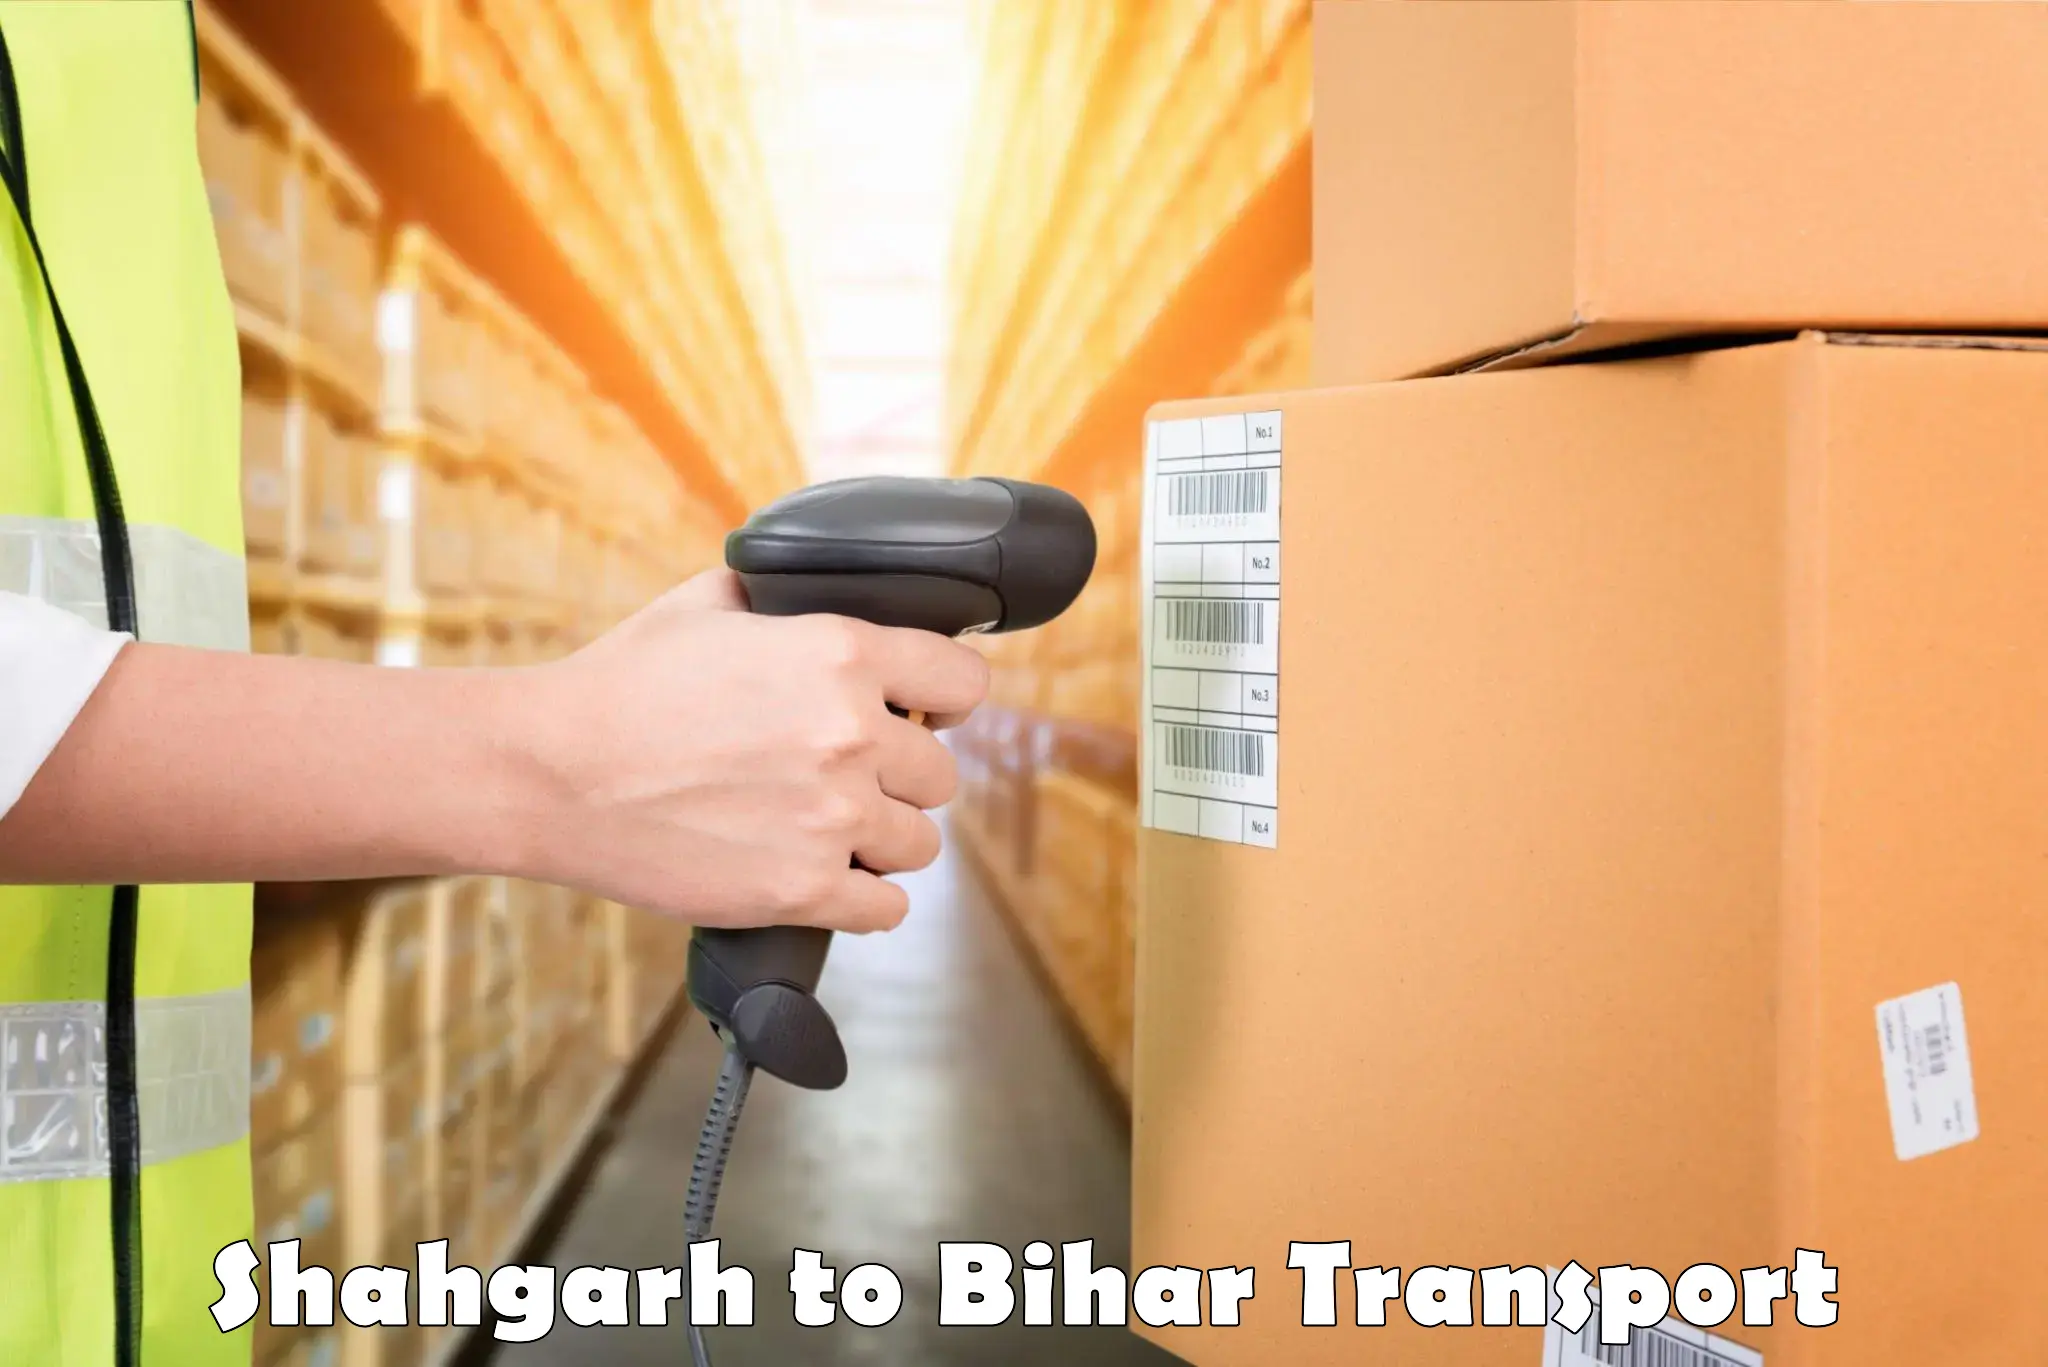 Goods transport services Shahgarh to Chakai